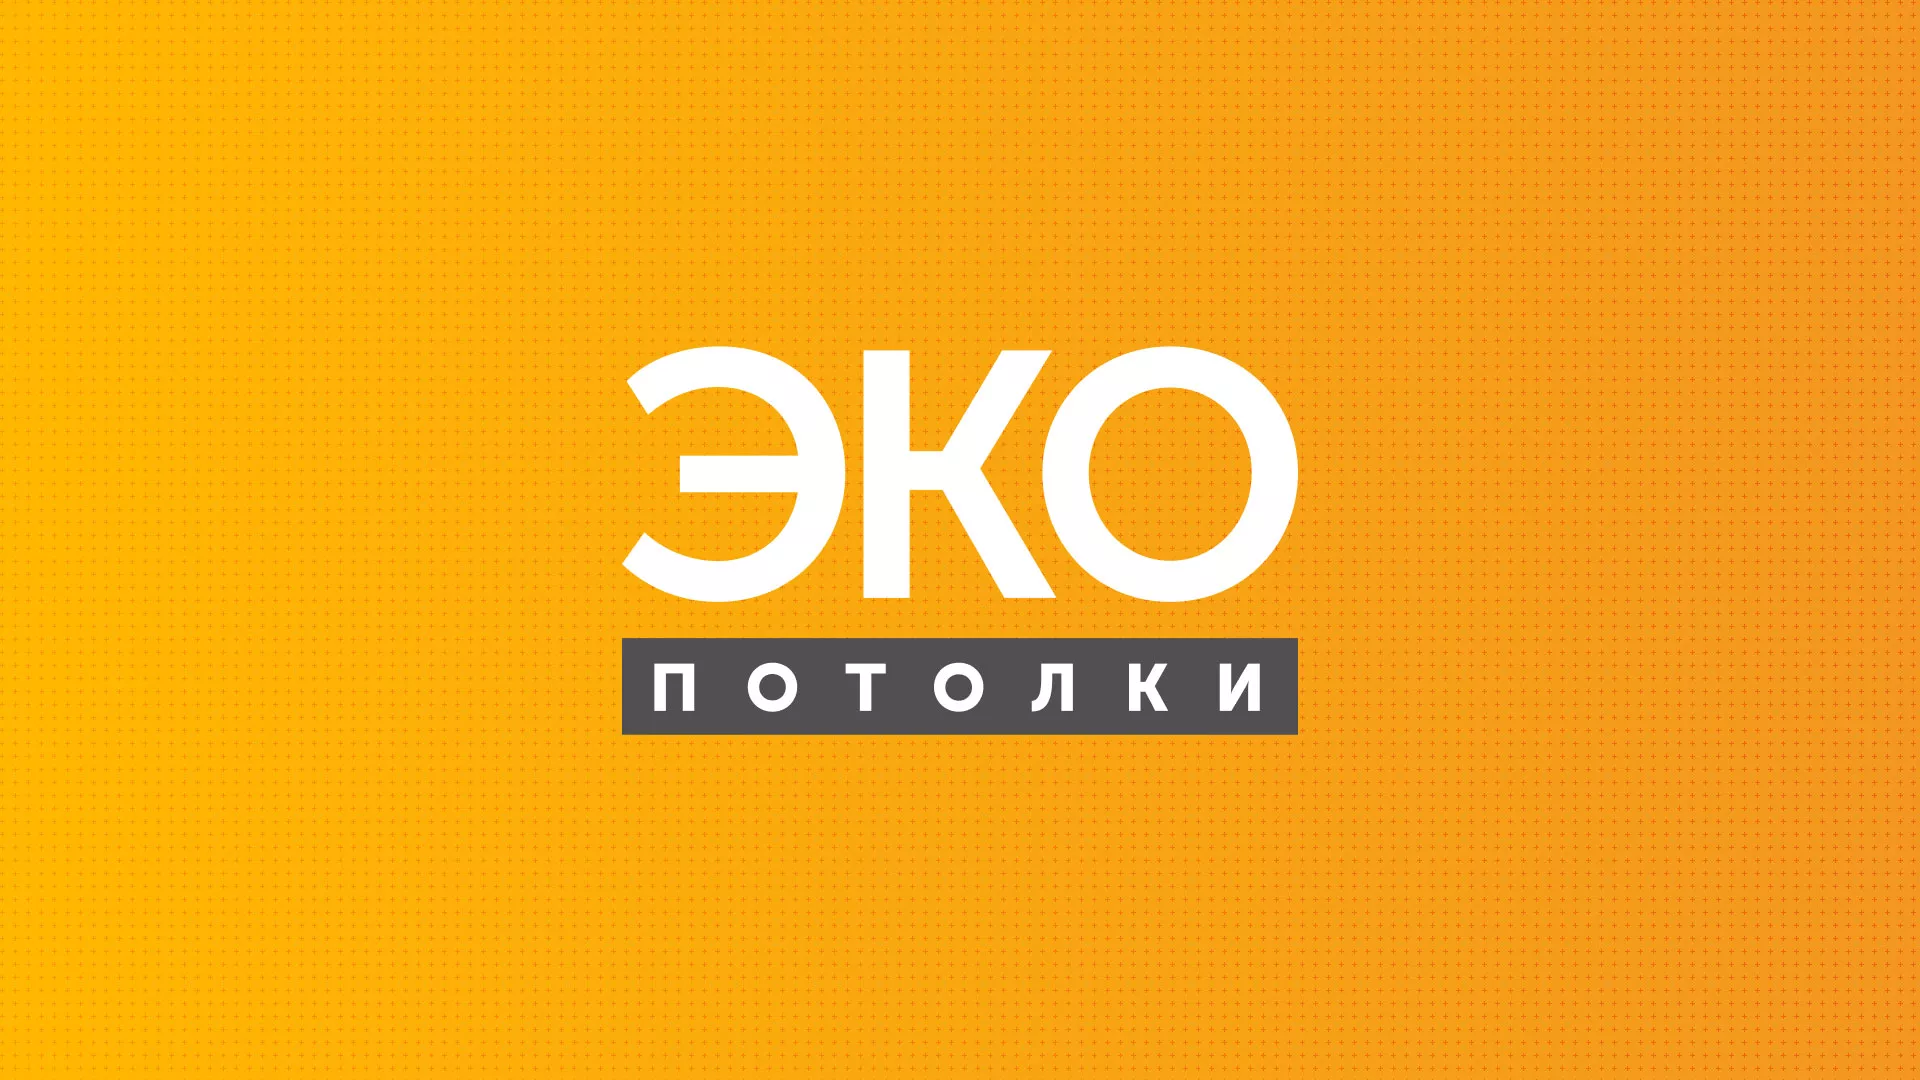 Разработка сайта по натяжным потолкам «Эко Потолки» в Иркутске